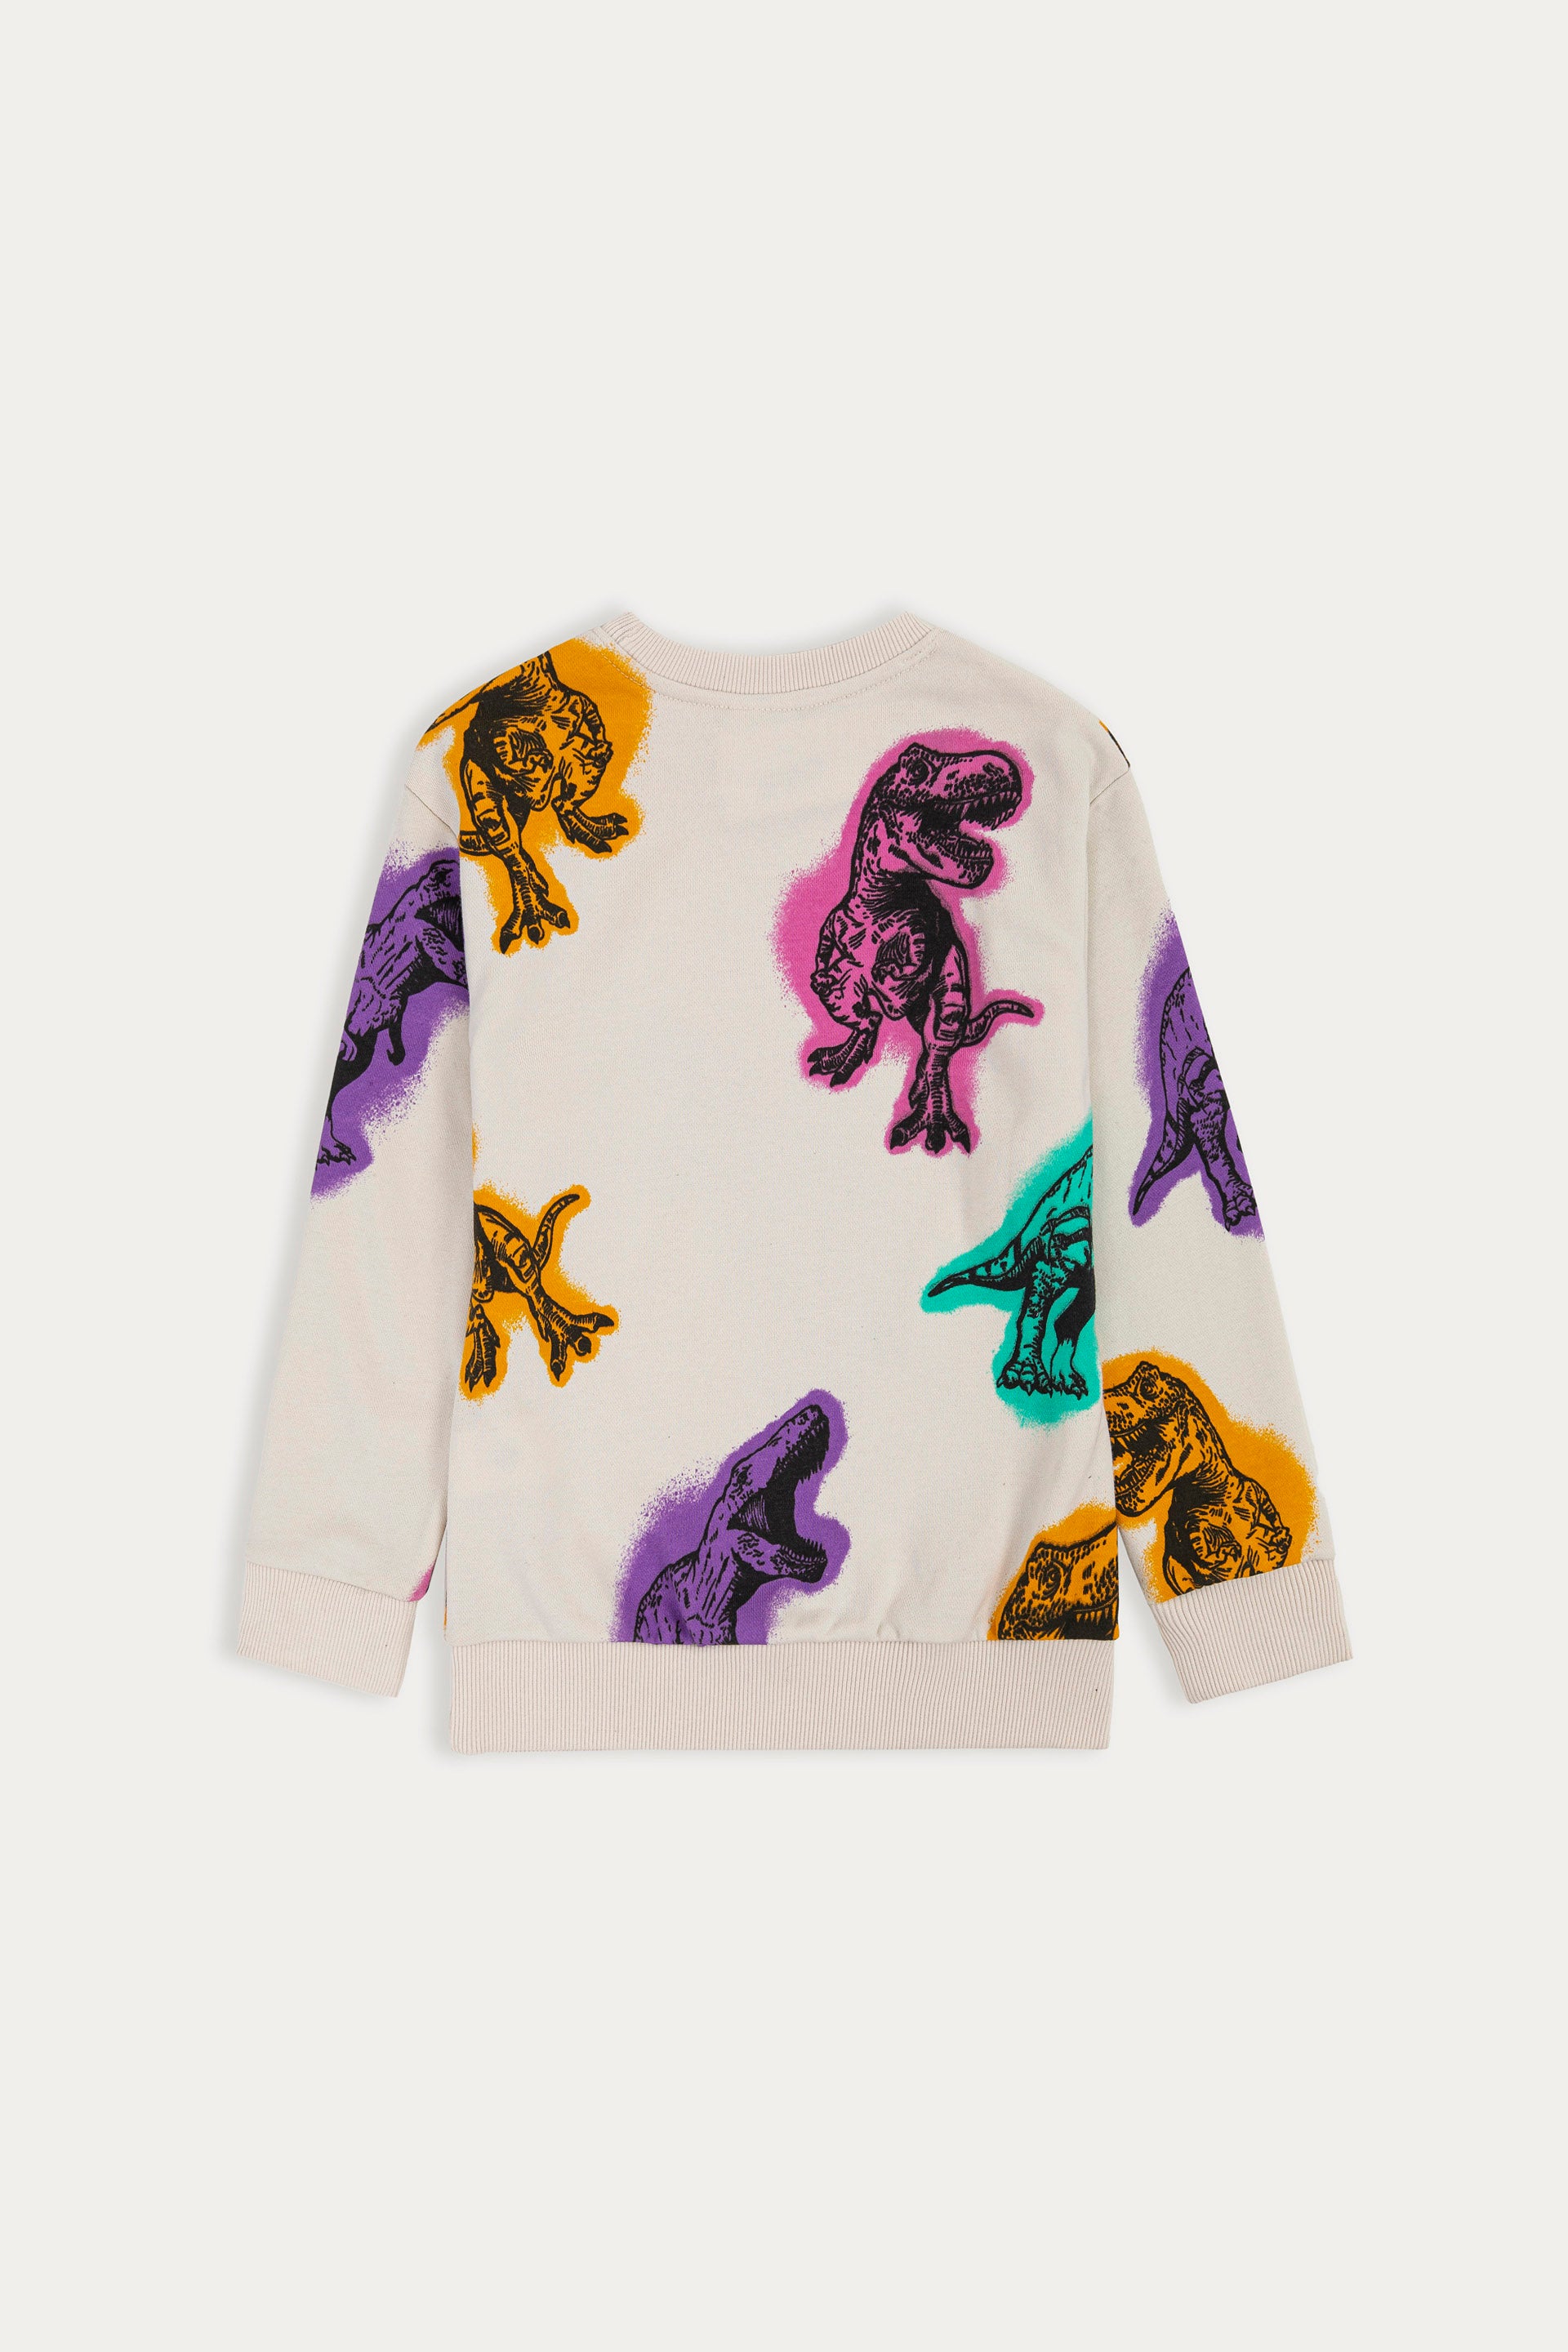 Abstract Dinosaur Pattern Sweatshirt